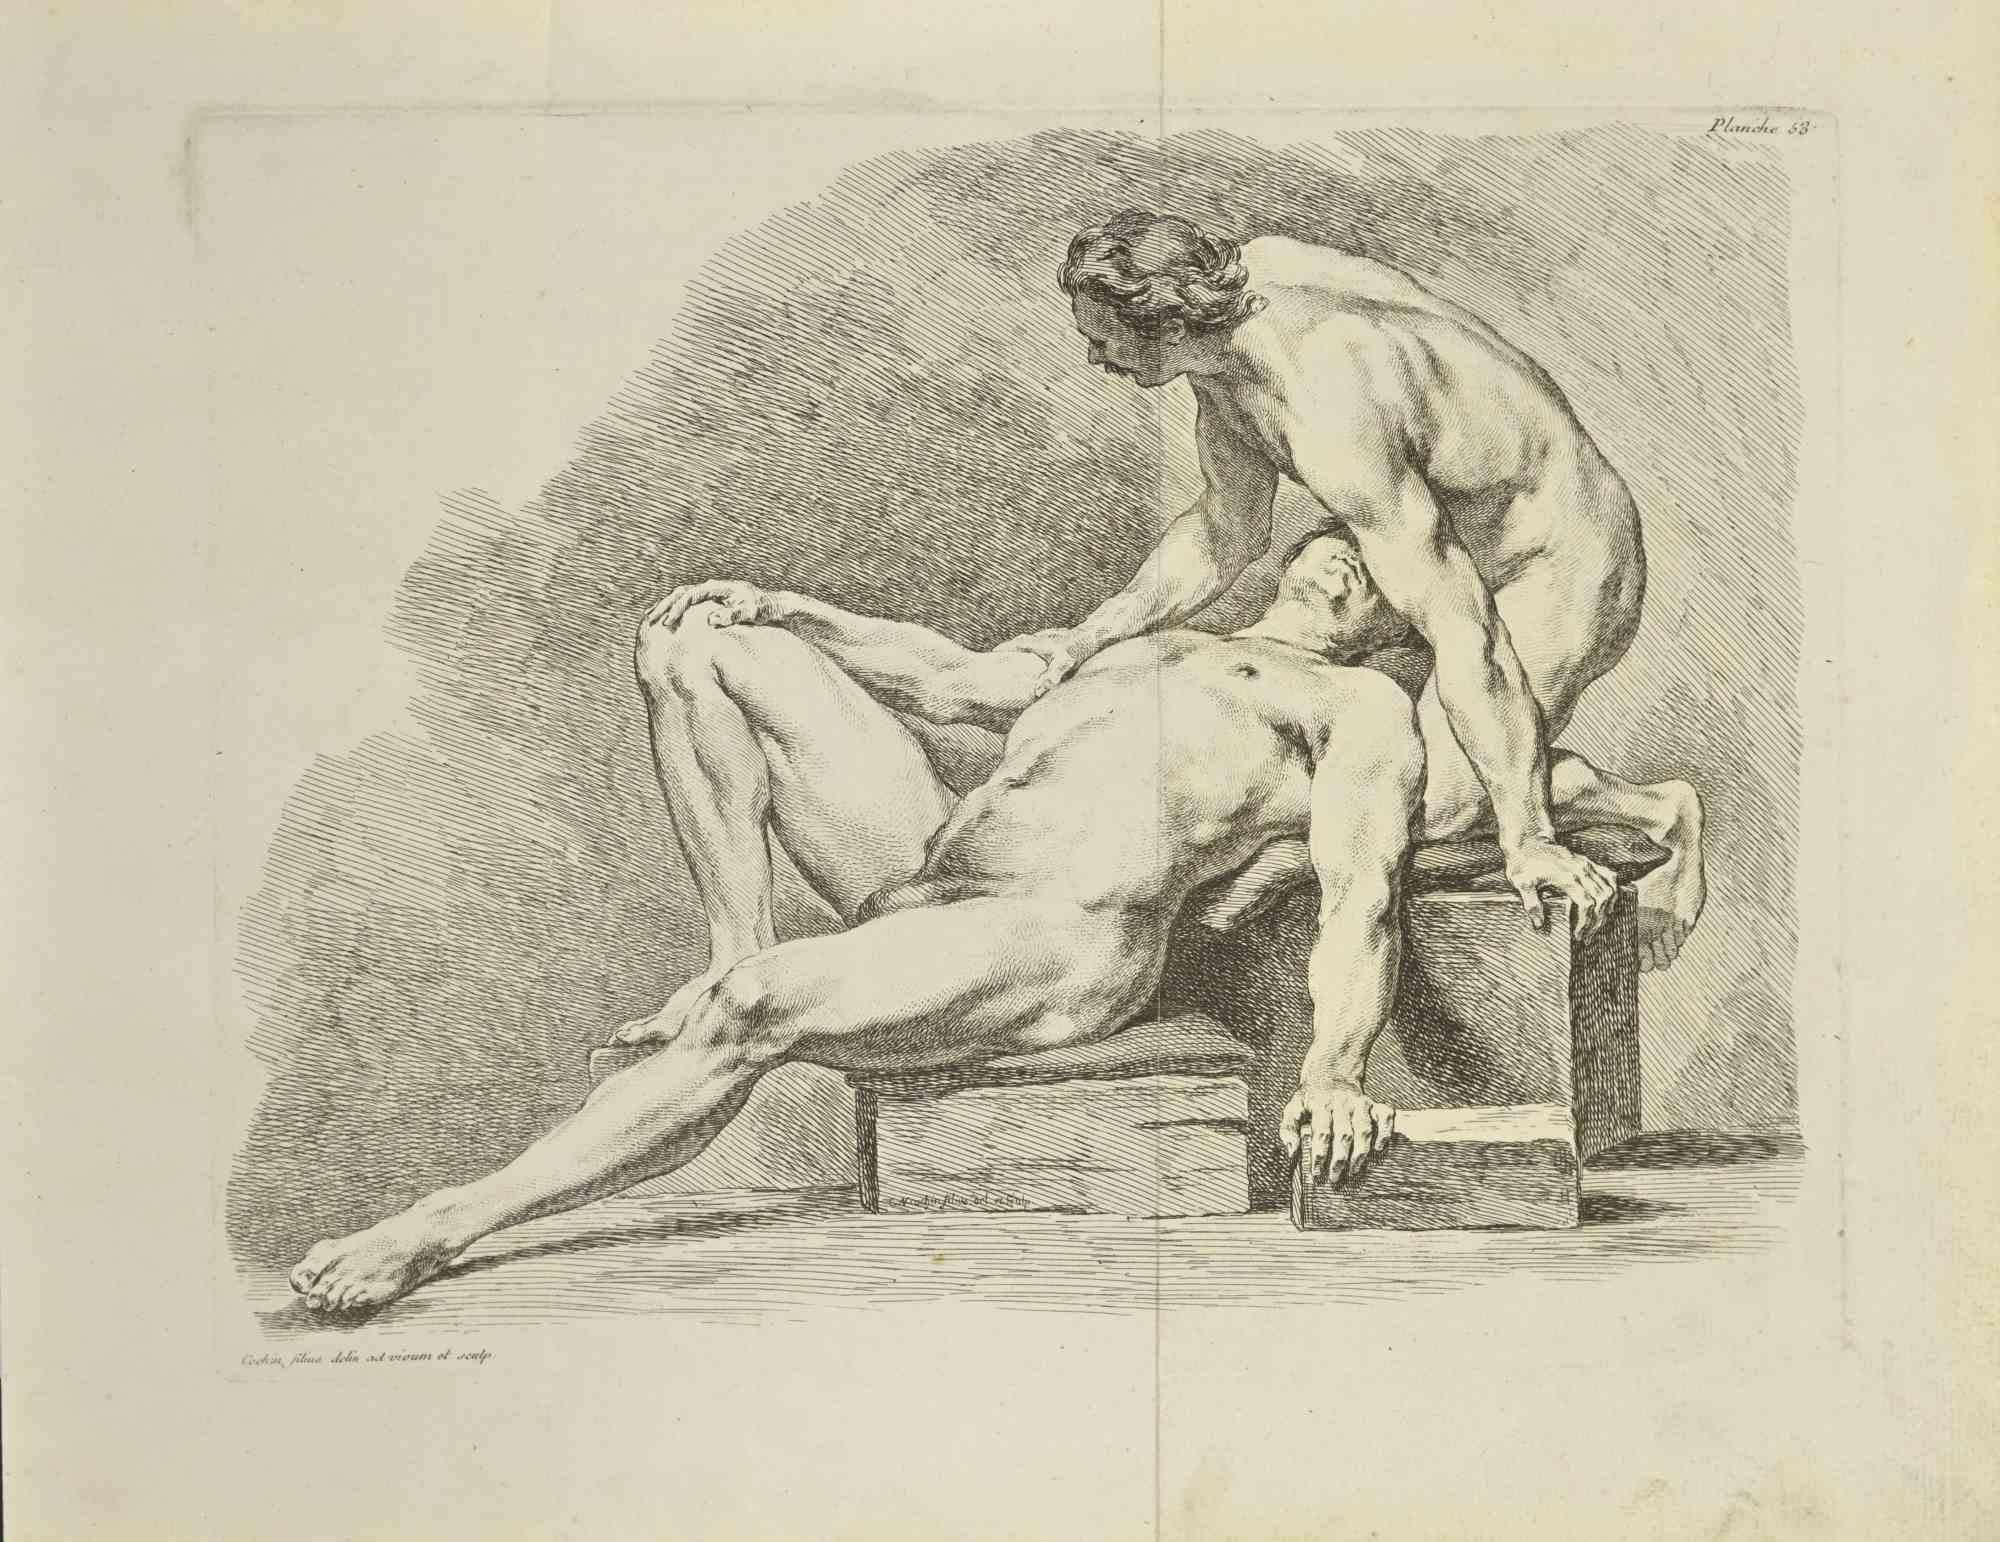 Zwei nackte Männer ist eine Radierung von Nicholas Cochin aus dem Jahr 1755.

Signiert auf der Platte.

Guter Zustand mit zentraler Faltung.

Das Kunstwerk wird mit sicheren Strichen dargestellt.